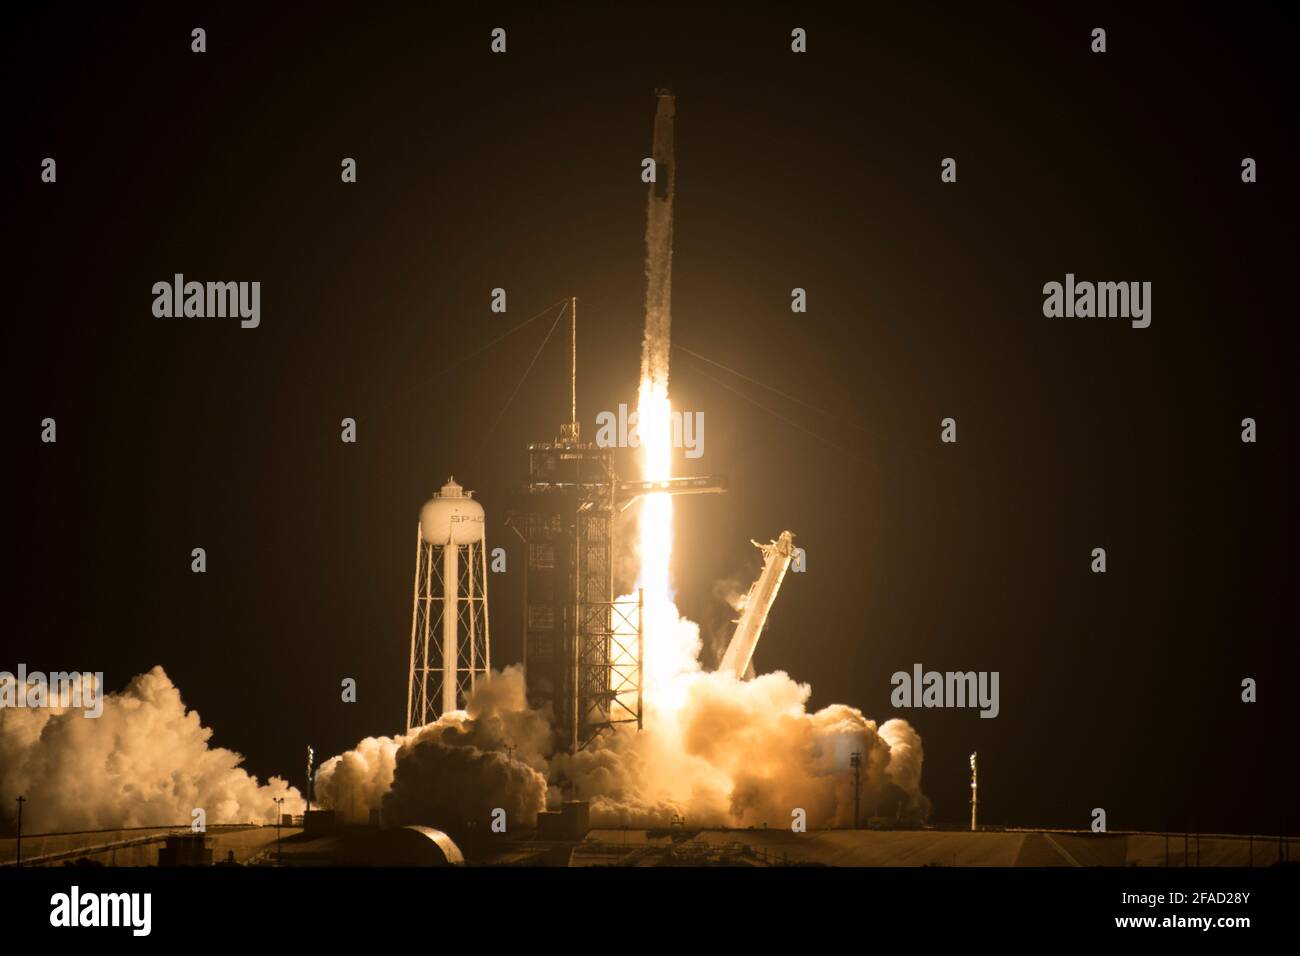 Un cohete SpaceX Falcon 9 que transporta la nave espacial Crew Dragon de la compañía se lanza en la misión SpaceX Crew-2 de la NASA a la Estación Espacial Internacional con los astronautas de la NASA Shane Kimbrough y Megan McArthur, astronauta de la ESA (Agencia Espacial Europea) Thomas Pesquet, Akihiko Hoshide, astronauta de la Agencia de Exploración Aeroespacial de Japón (JAXA), a bordo del viernes 23 de abril de 2021, en el Centro Espacial Kennedy de la NASA en Florida. La misión SpaceX Crew-2 de la NASA es la segunda misión de rotación de la tripulación de la nave espacial SpaceX Crew Dragon y el cohete Falcon 9 a la Estación Espacial Internacional como parte del Commercial de la agencia Foto de stock